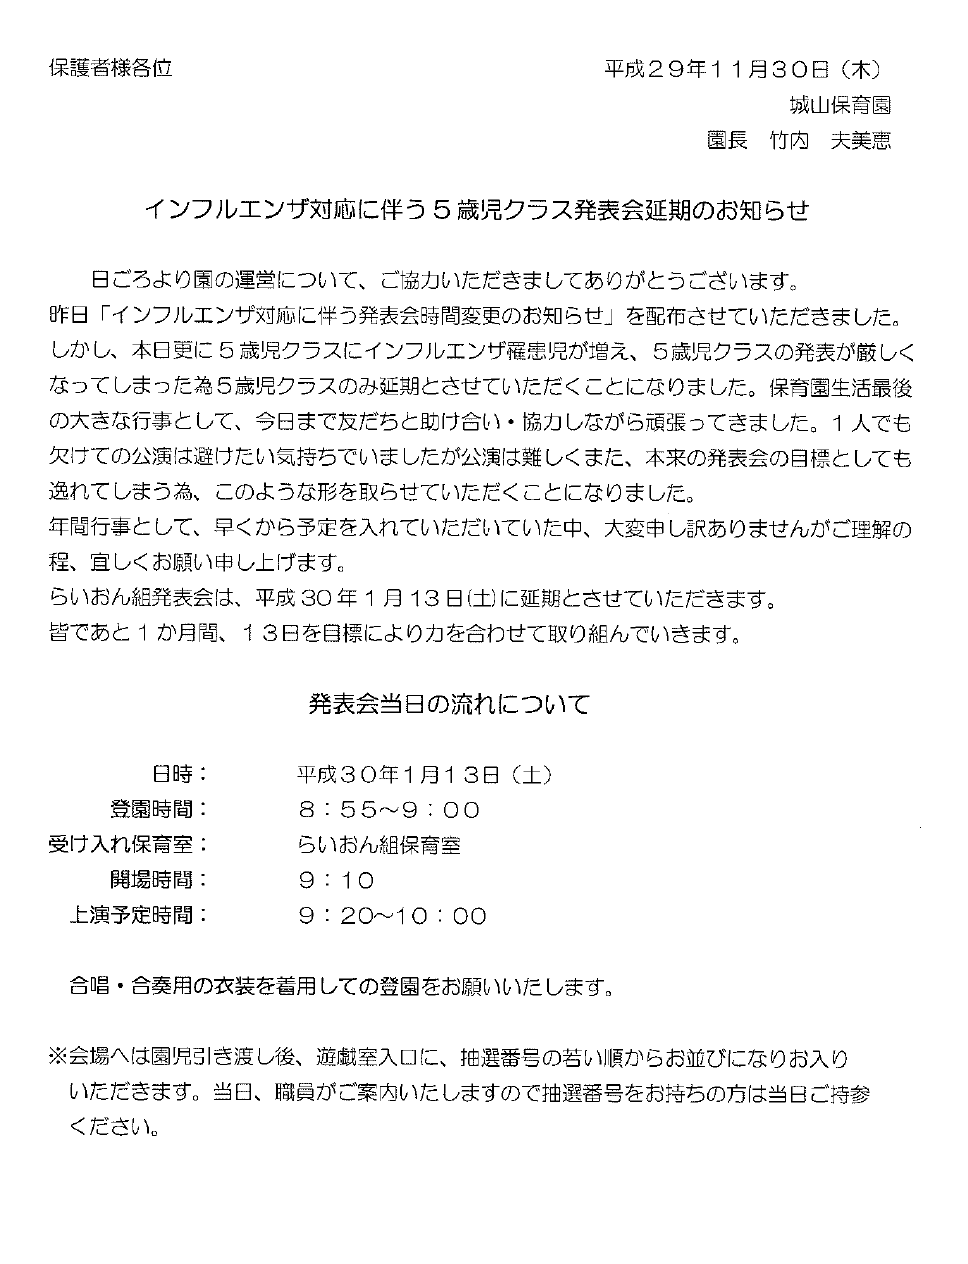 //www.aobakai.or.jp/files/libs/1894/201711301717592688.png